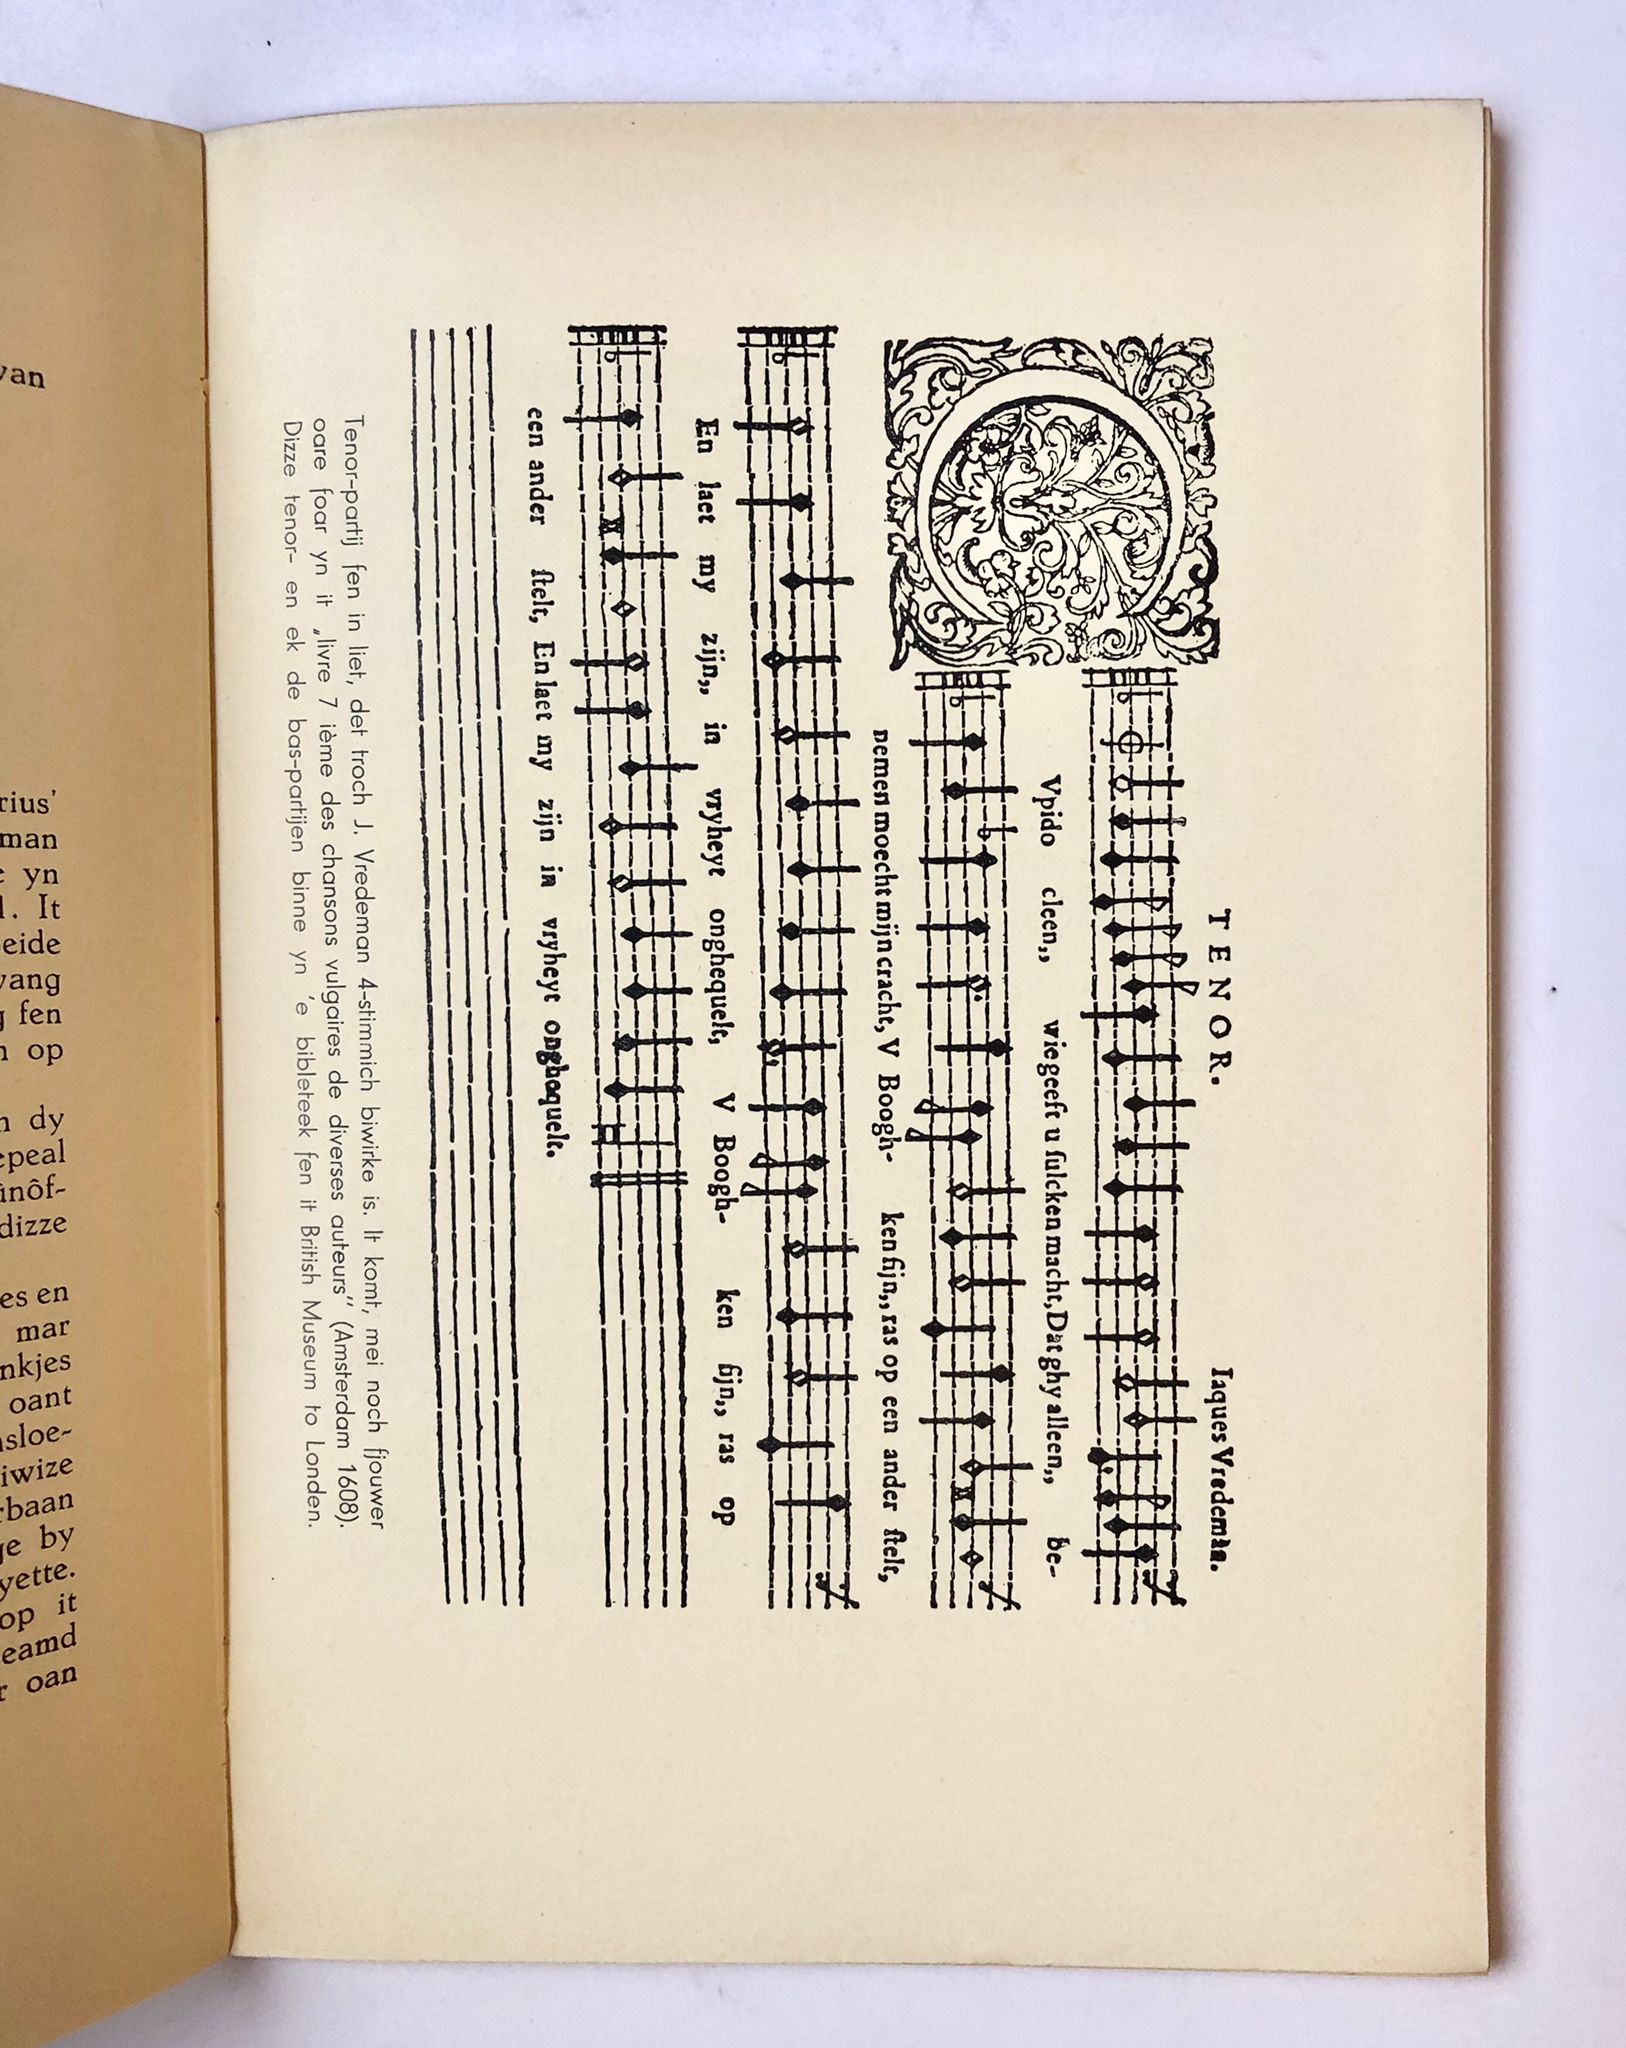 [Friesland, Boalsert] De Fryske Librije Rige Lytse Folksskriften, Muzyk yn Fryslân oant 1800, A. J. Osinga, Boalsert, 1935, 98 pp.